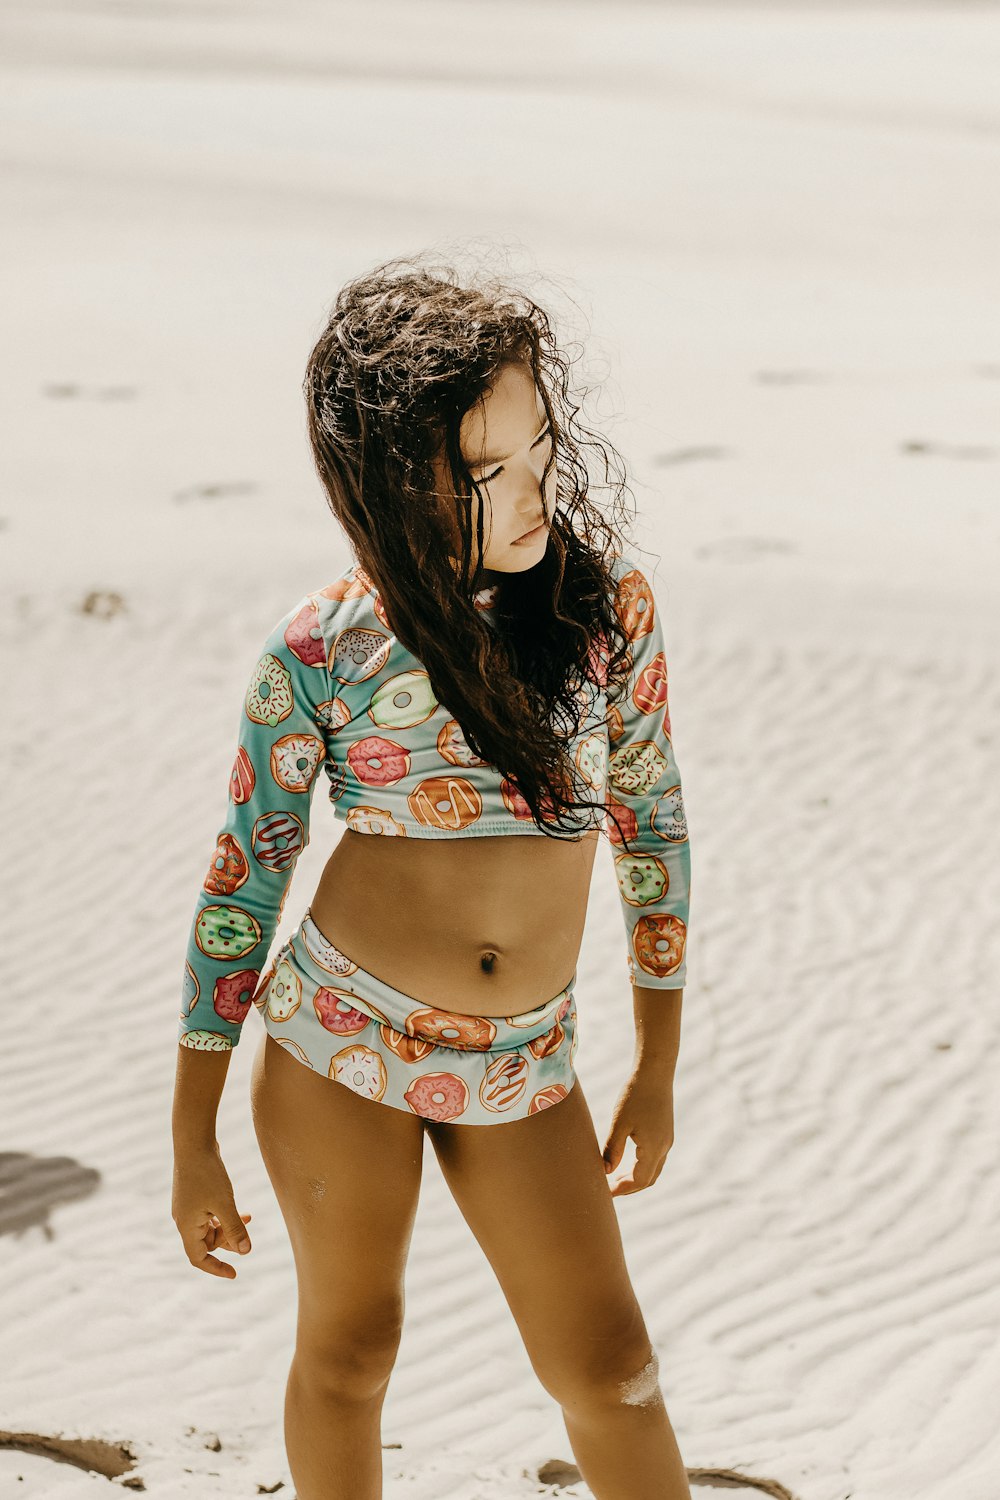 Foto Una niña en bikini en la playa – Imagen Ajuruteua gratis en Unsplash